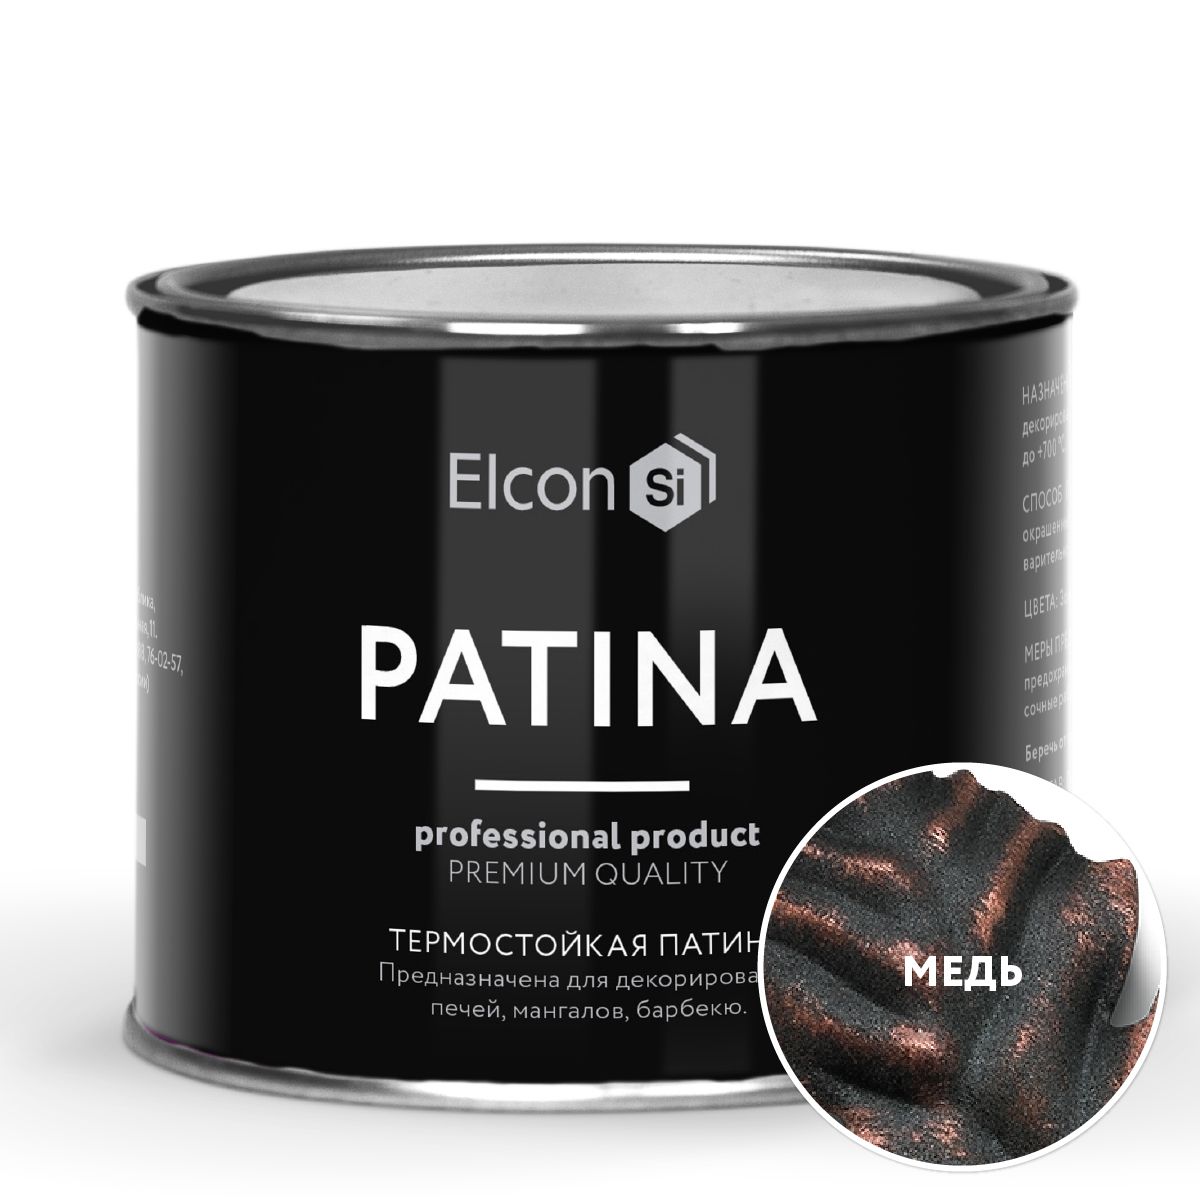 Термостойкая патина Elcon Patina + 700 градусов Медь 0,2 кг